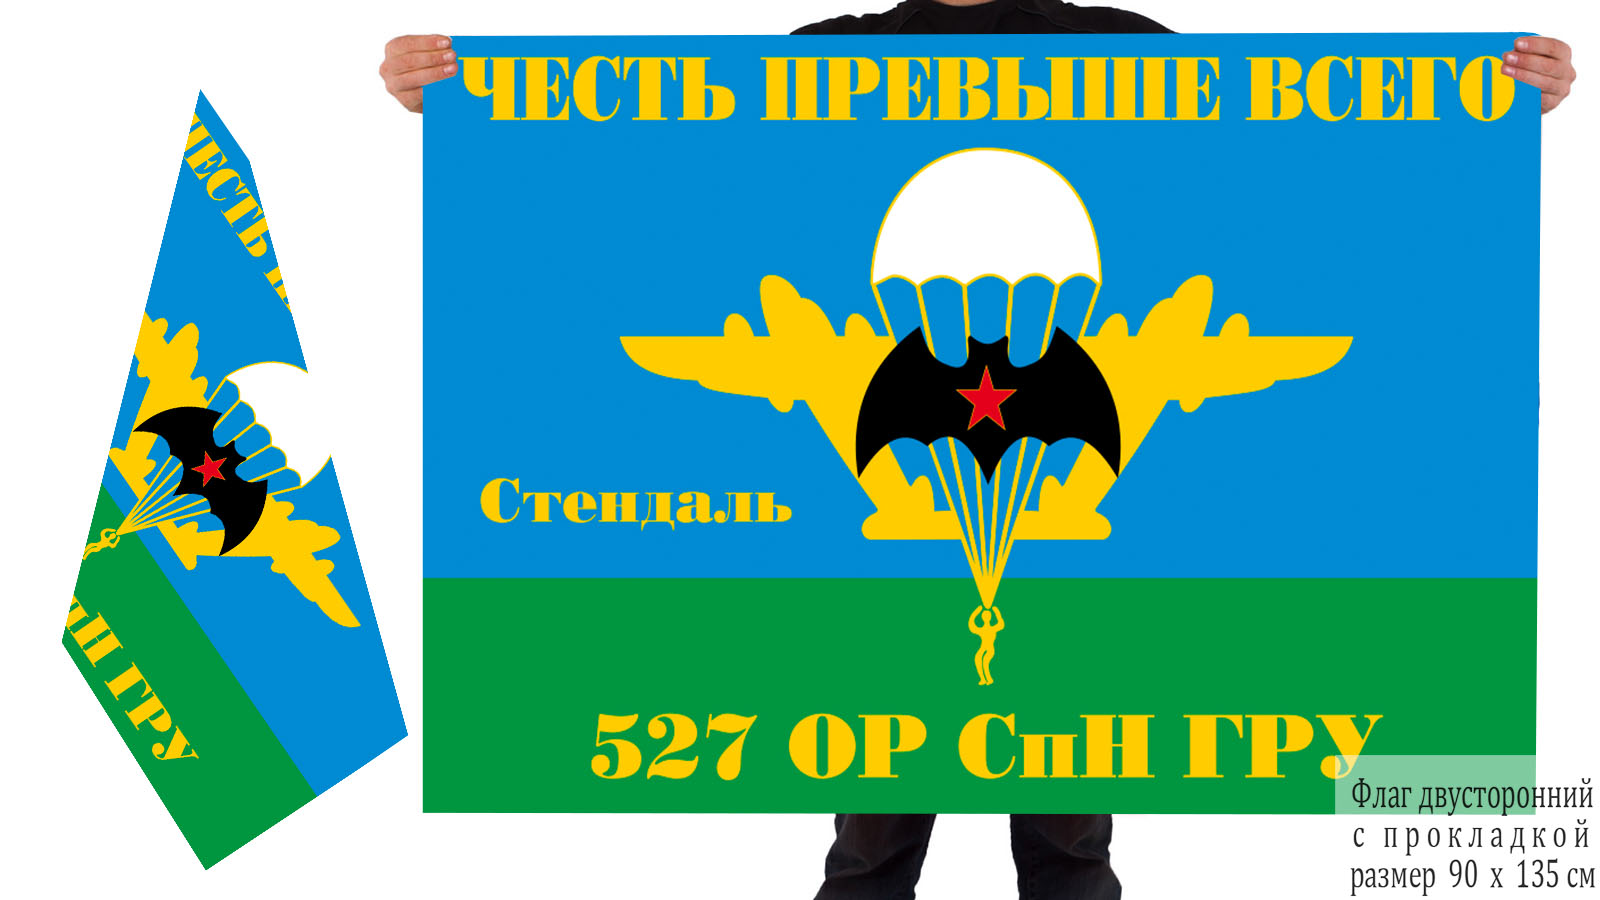 Двусторонний флаг 527 ОРСпН ГРУ